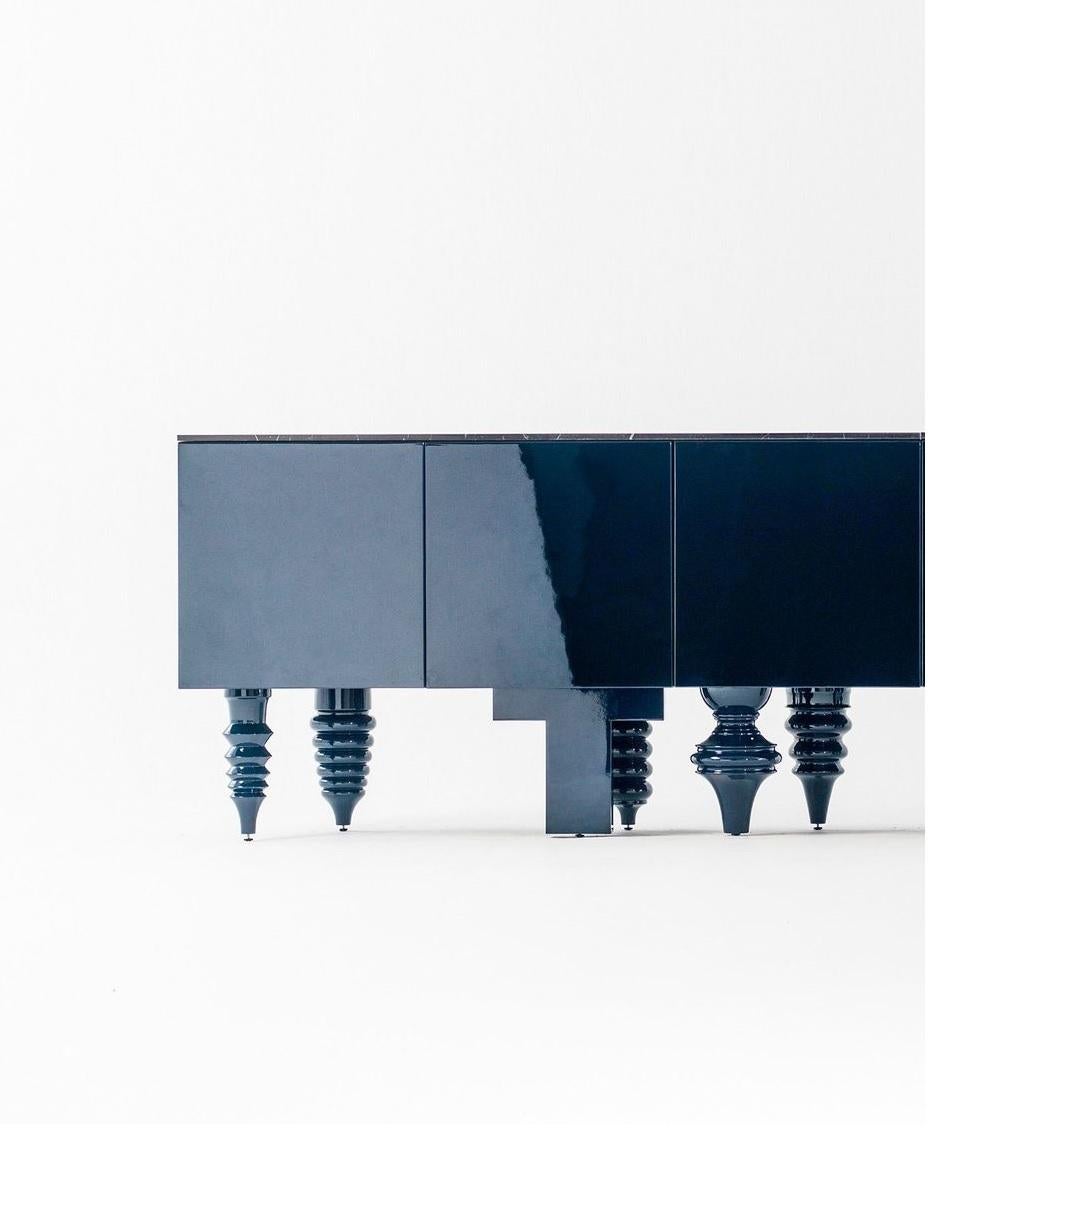 Meuble multi-pieds en marbre de 1,5 mètre par Jaime Hayon
Dimensions : P 50 x L 150 x H 80 cm 
Matériaux : Conteneurs, portes et étagères en MDF de différentes largeurs. Pieds en bois d'aulne massif tourné. Les finitions laquées monochromes sont